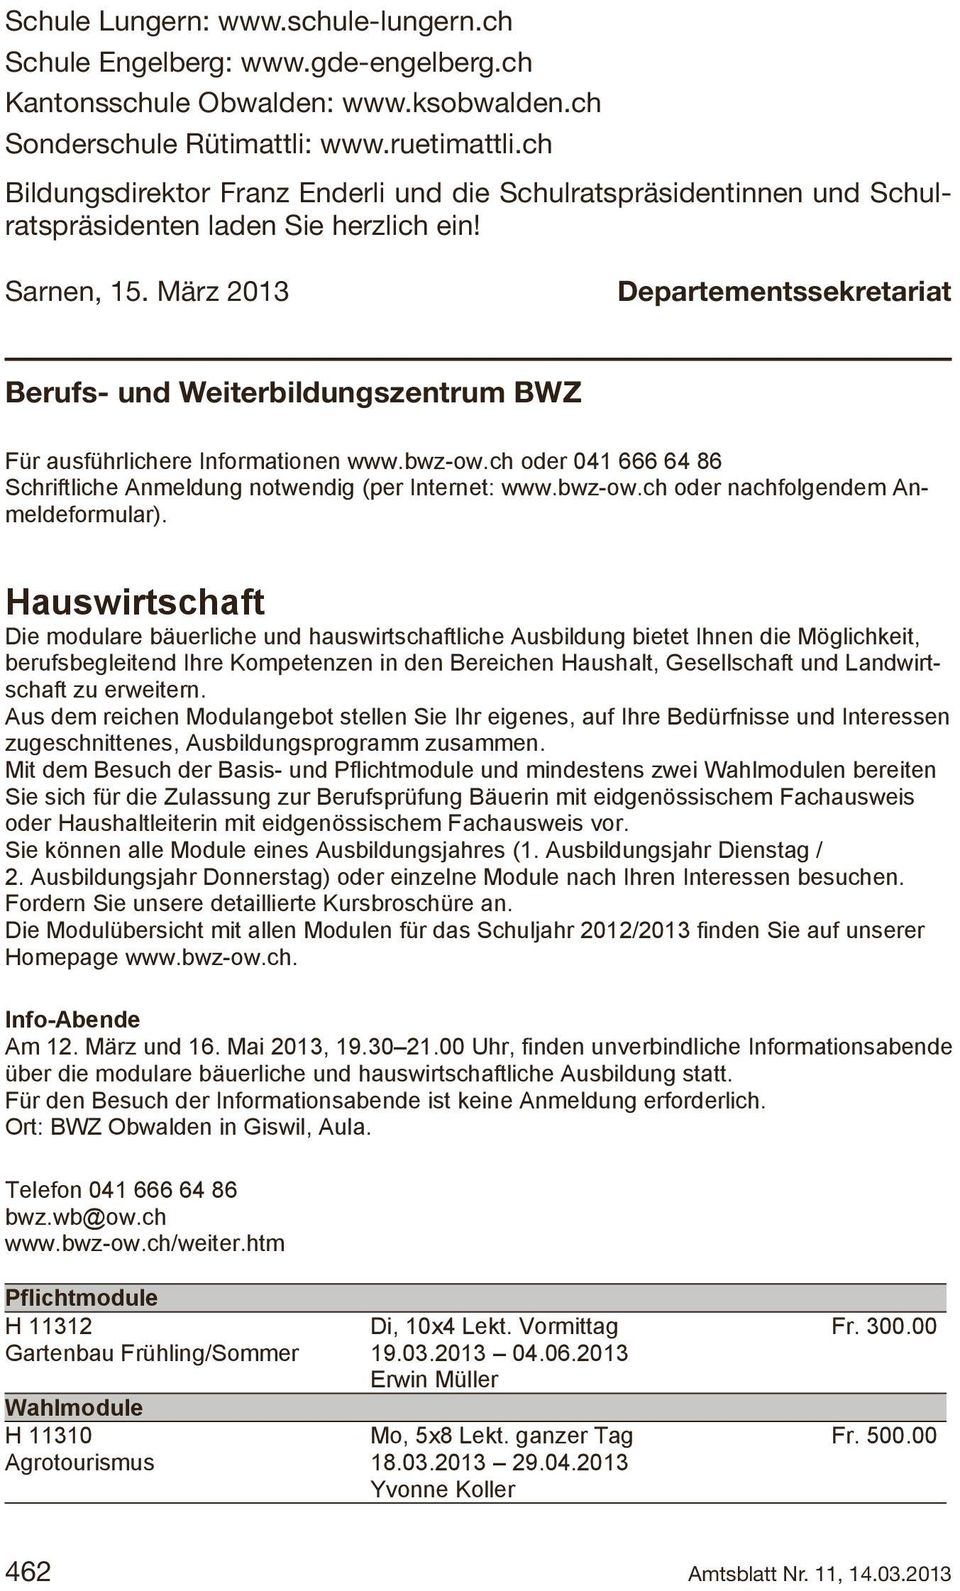 März 2013 Departementssekretariat Berufs- und und Weiterbildungszentrum BWZ BWZ Für ausführlichere Informationen www.bwz-ow.ch oder 041 666 64 86 Schriftliche Anmeldung notwendig (per Internet: www.